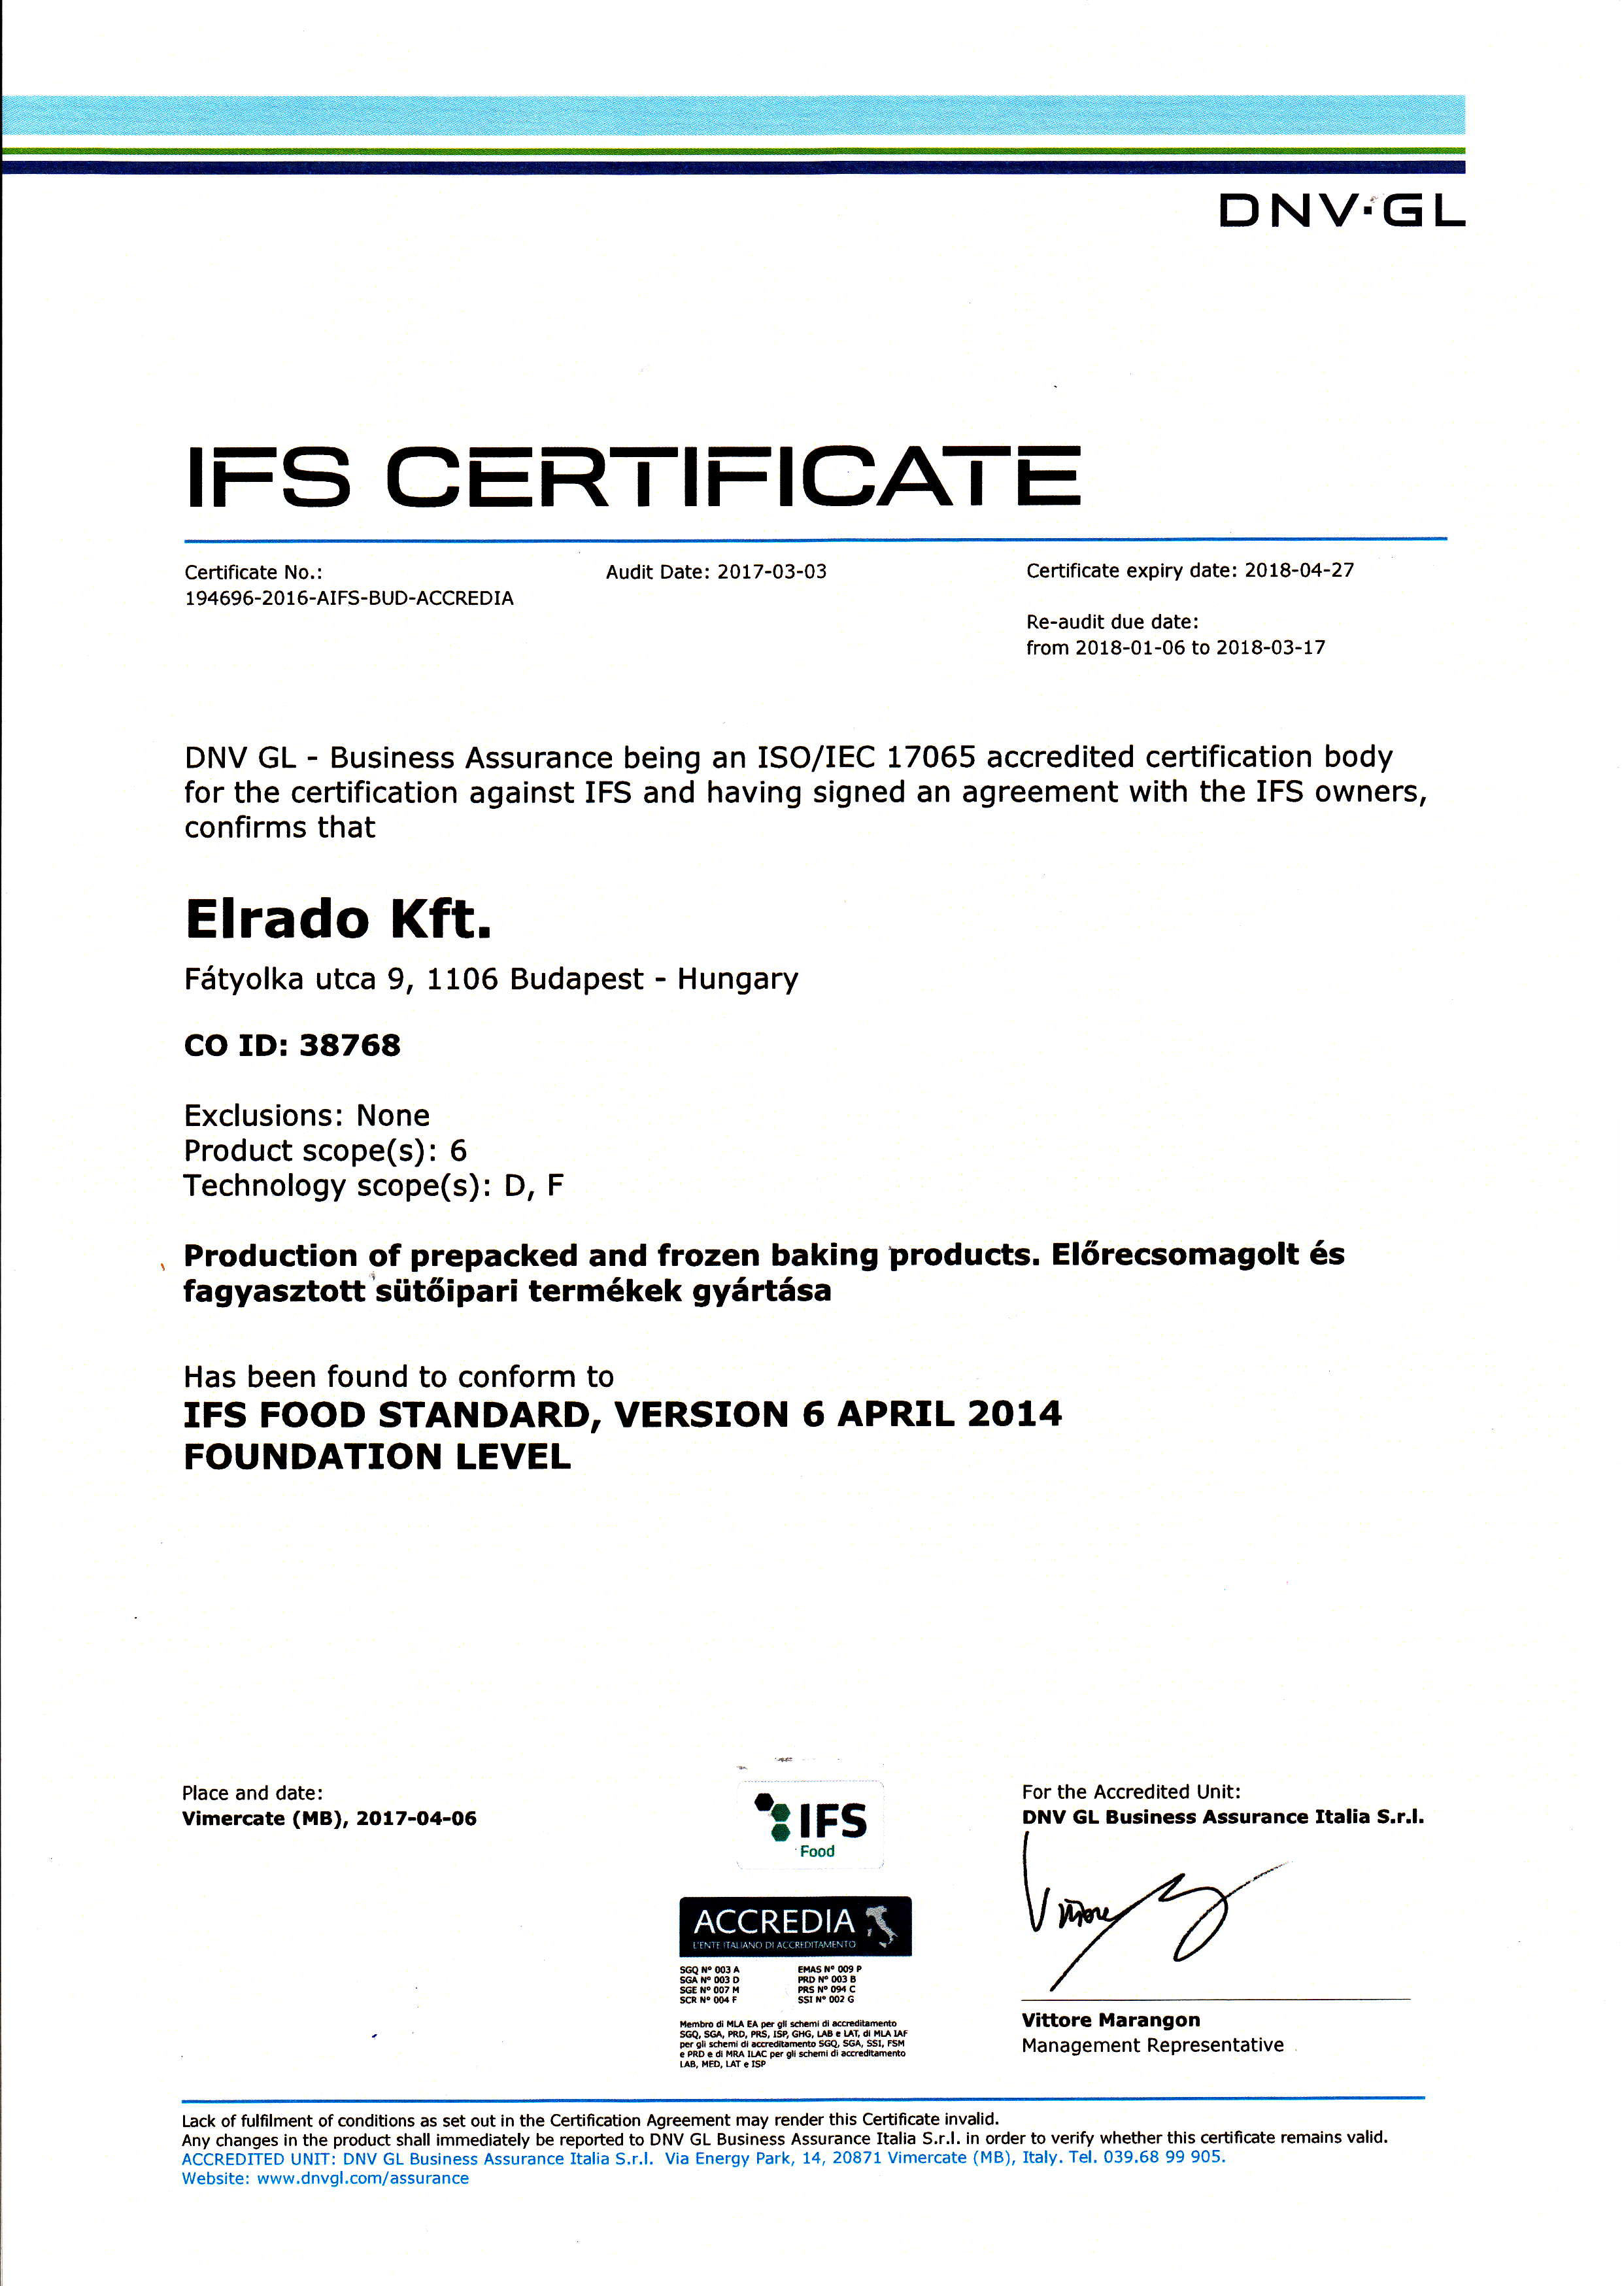 ifs certificate